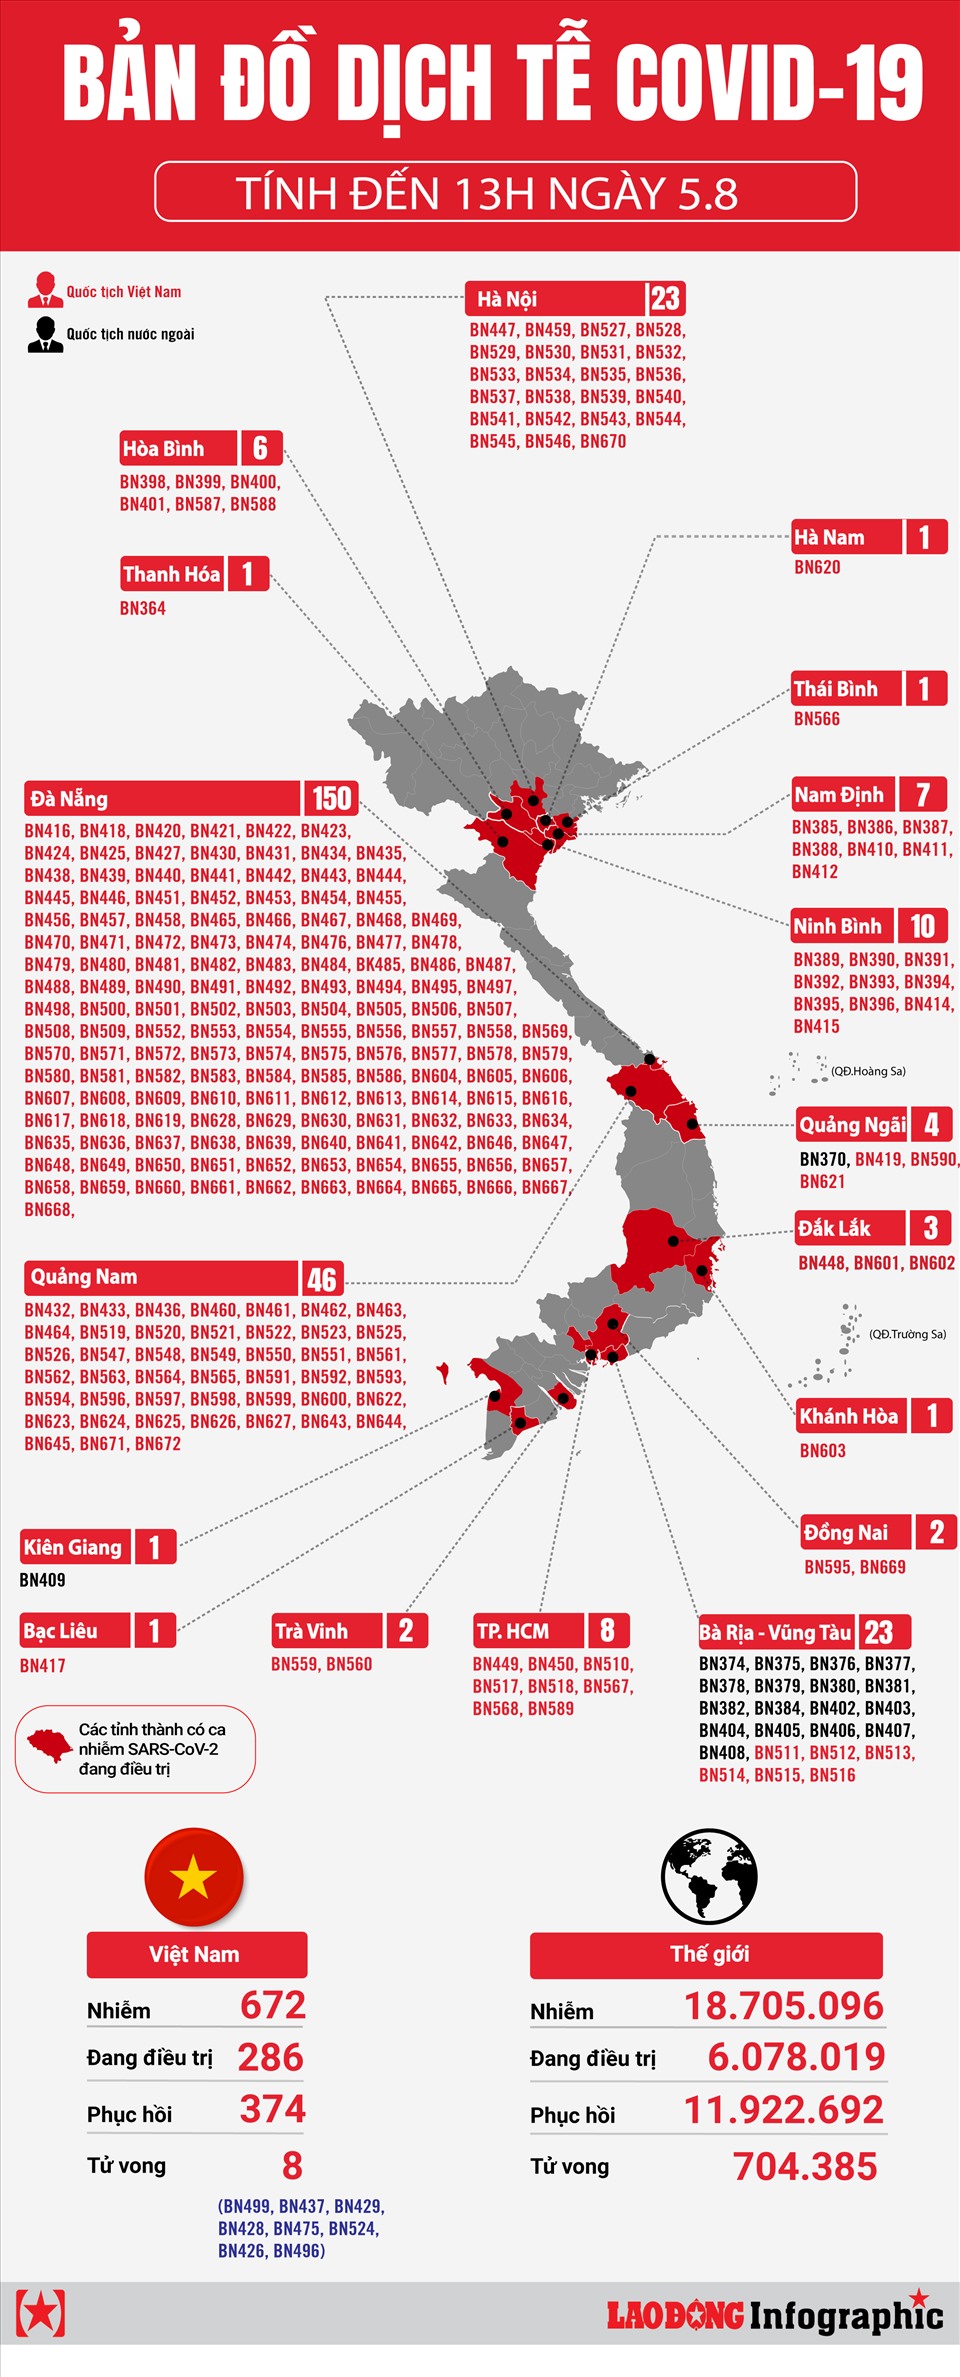 Bản đồ dịch tễ COVID-19 Việt Nam giúp bạn nắm bắt tình hình dịch bệnh ở các tỉnh thành trên toàn quốc. Với bản đồ cập nhật đến năm 2024, bạn có thể theo dõi các biến động của dịch bệnh và cập nhật những thông tin mới nhất. Đừng bỏ lỡ ảnh liên quan để khám phá điều thú vị!